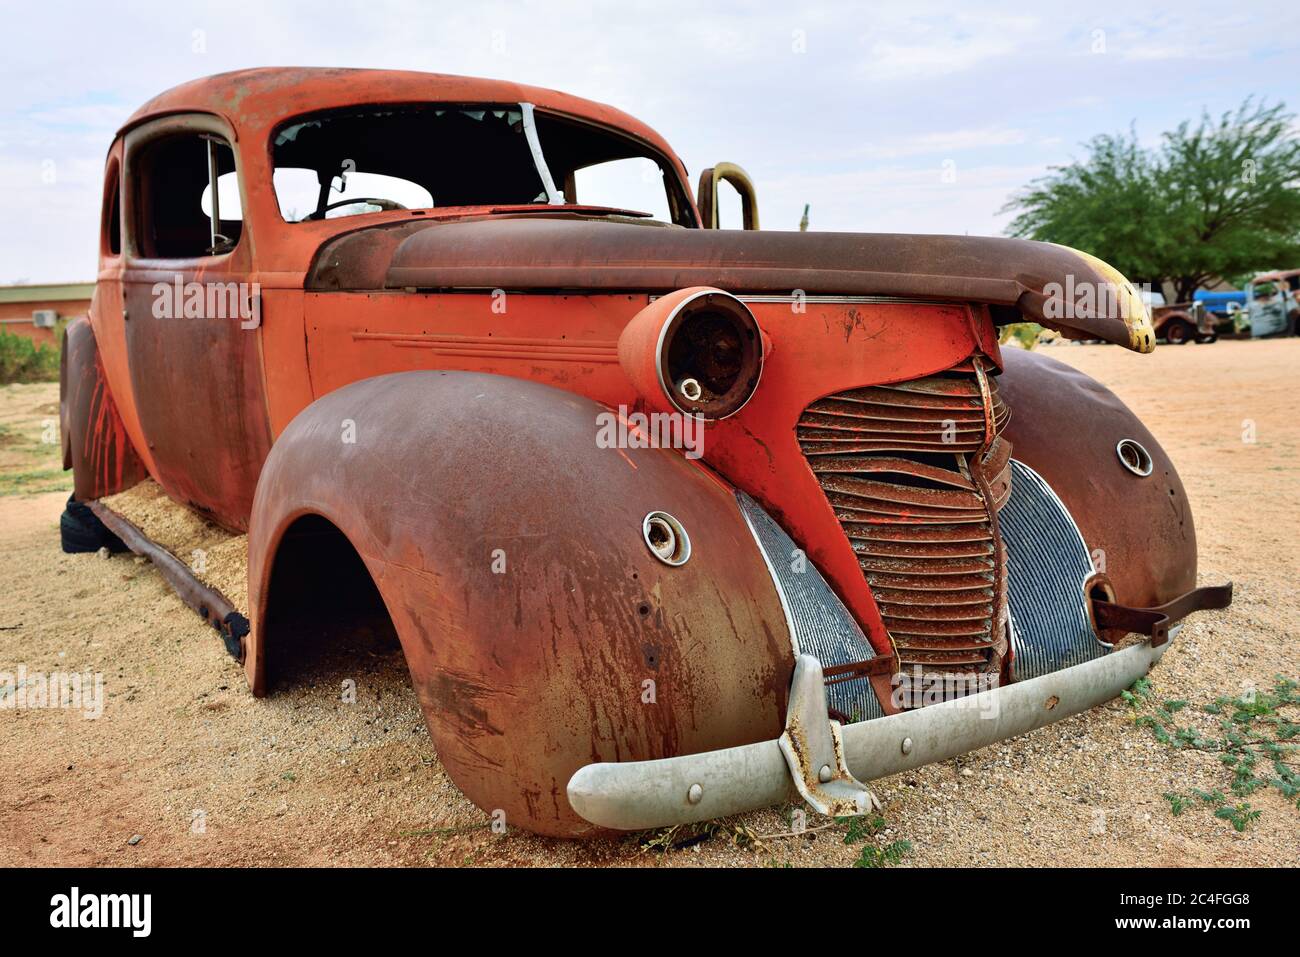 SOLITAIRE, NAMIBIA - 30 DE ENERO de 2016: Viejo vehículo abandonado dañado Hudson en la estación de servicio en Solitaire en el desierto de Namib, Namibia. Popular touristi Foto de stock